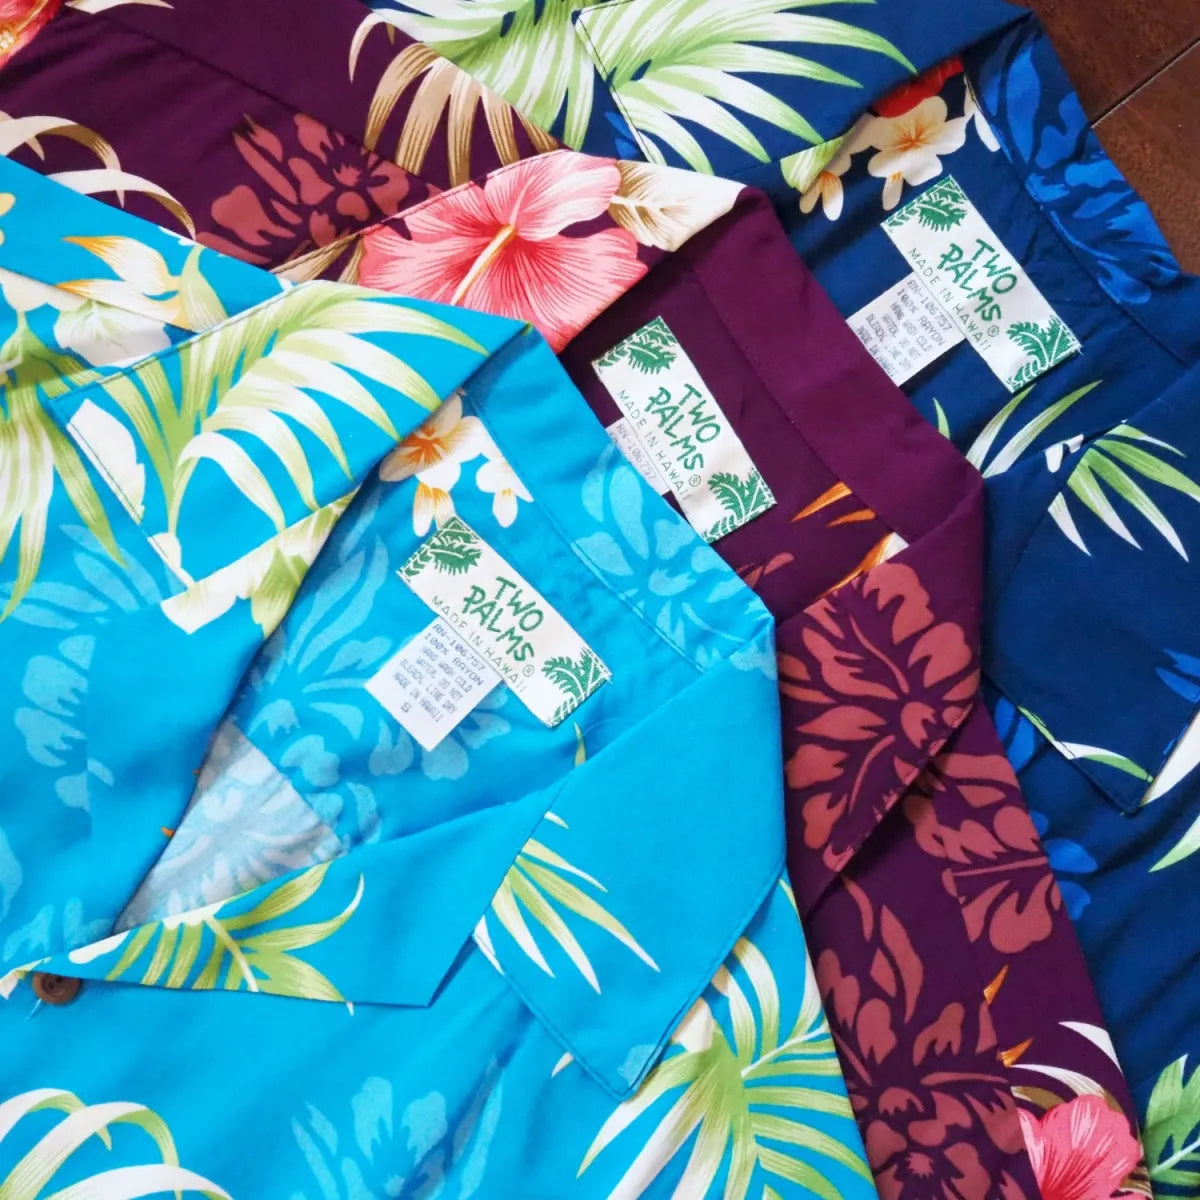 Passion blue hawaiian rayon shirt